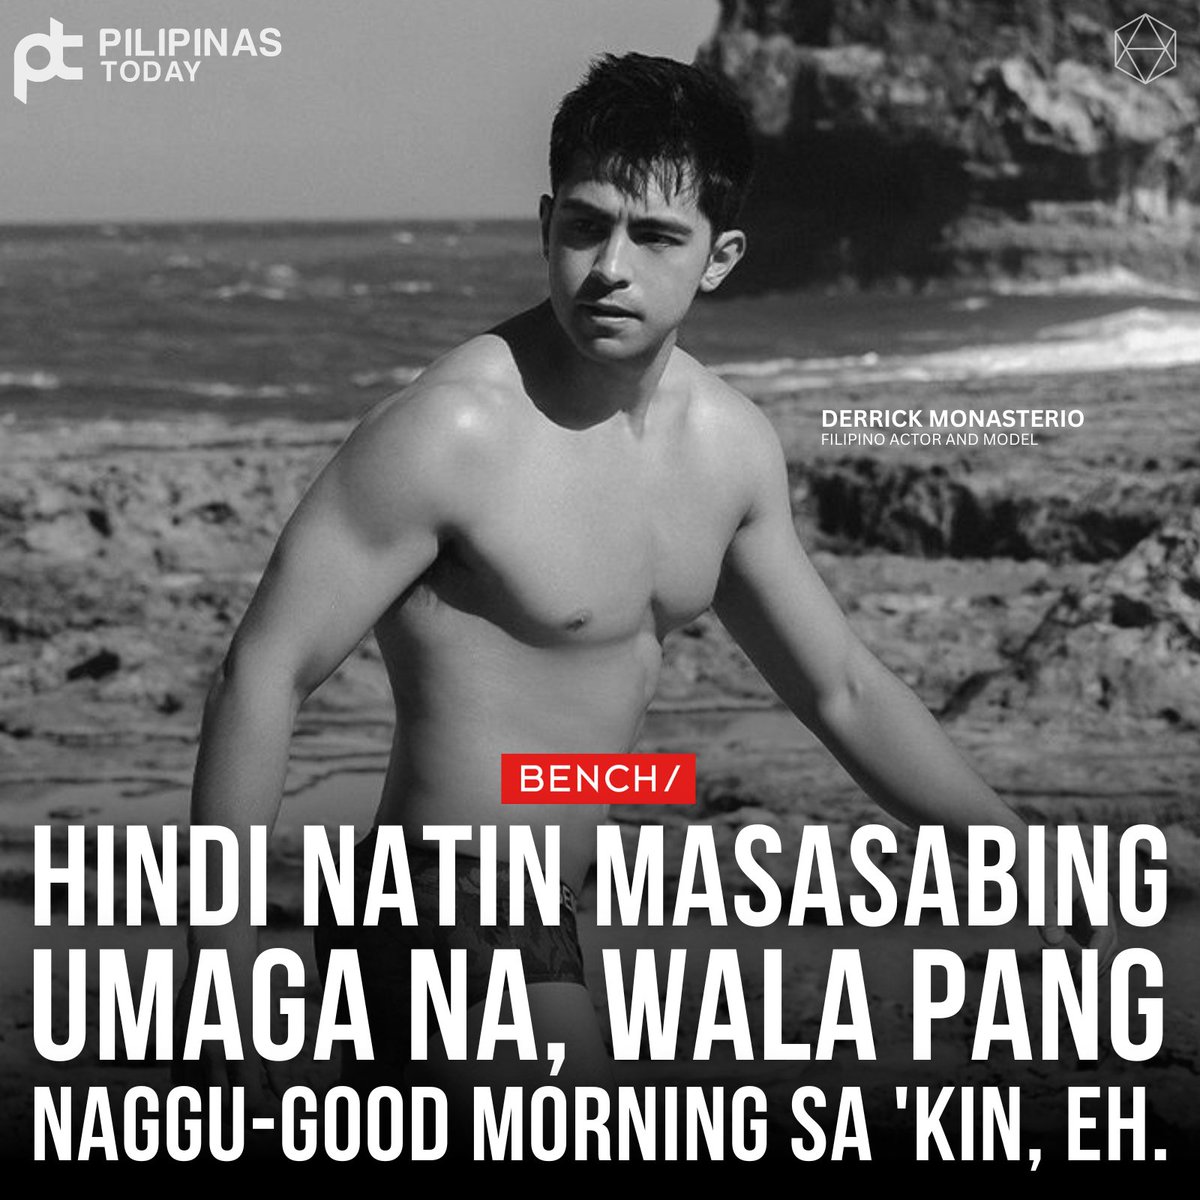 Hindi natin masasabing umaga na, wala pang naggu-good morning sa 'kin, eh.

#PilipinasToday
#DerrickMonasterio
#Bench